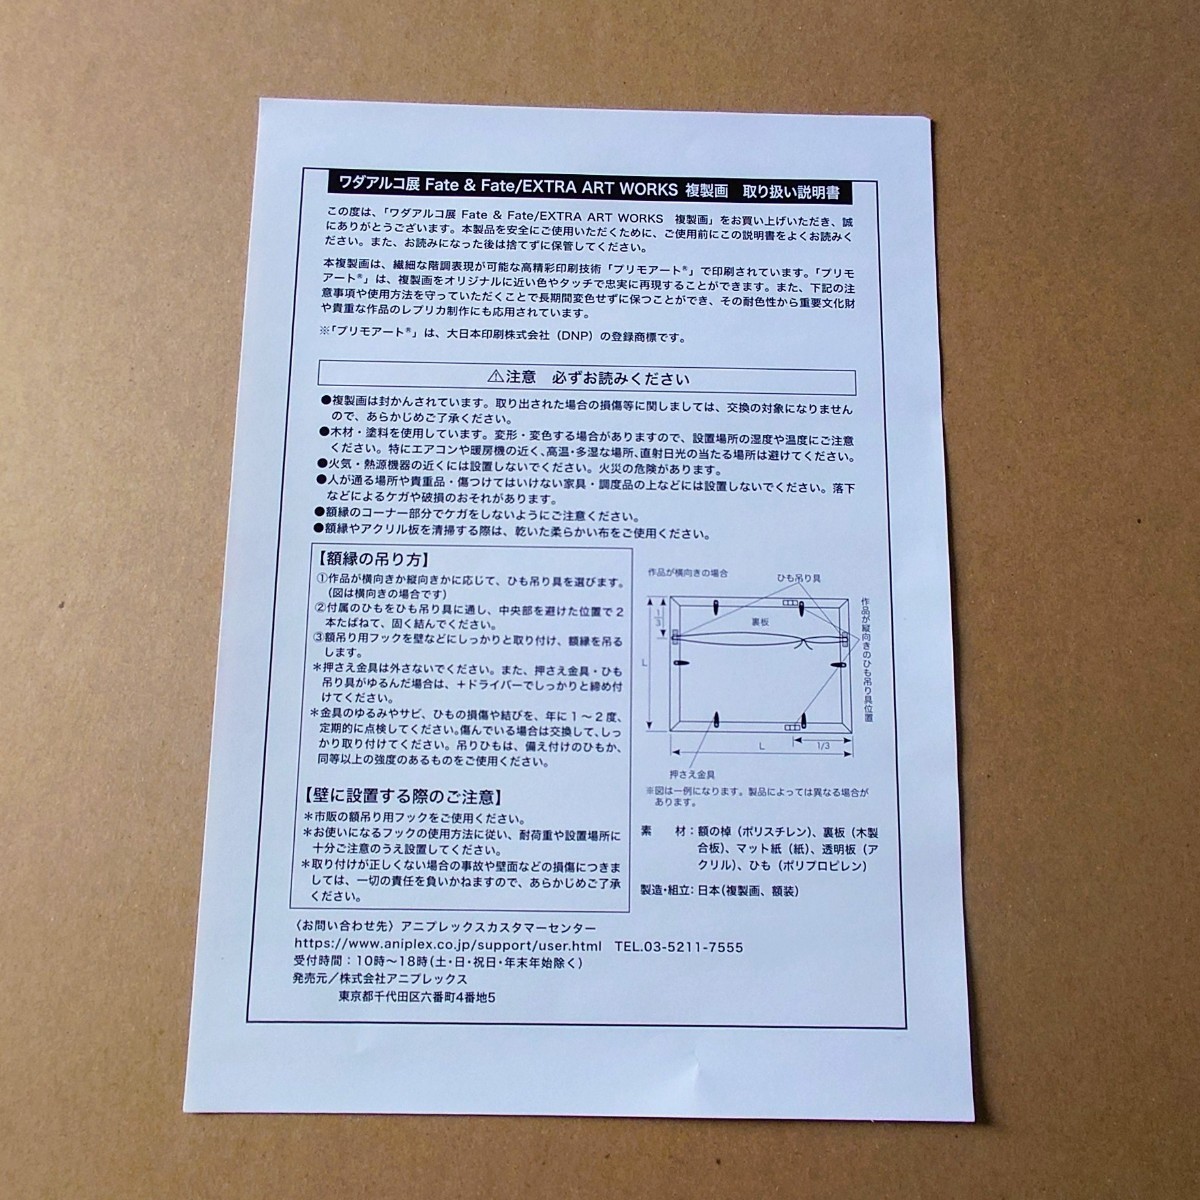 ワダアルコ展直筆サイン入り複製原画Fate/EXTRA FGO ネロ的詳細資料| One Map by FROM  JAPAN為您提供最方便的日本・美國商品代購代拍服務|日本代購